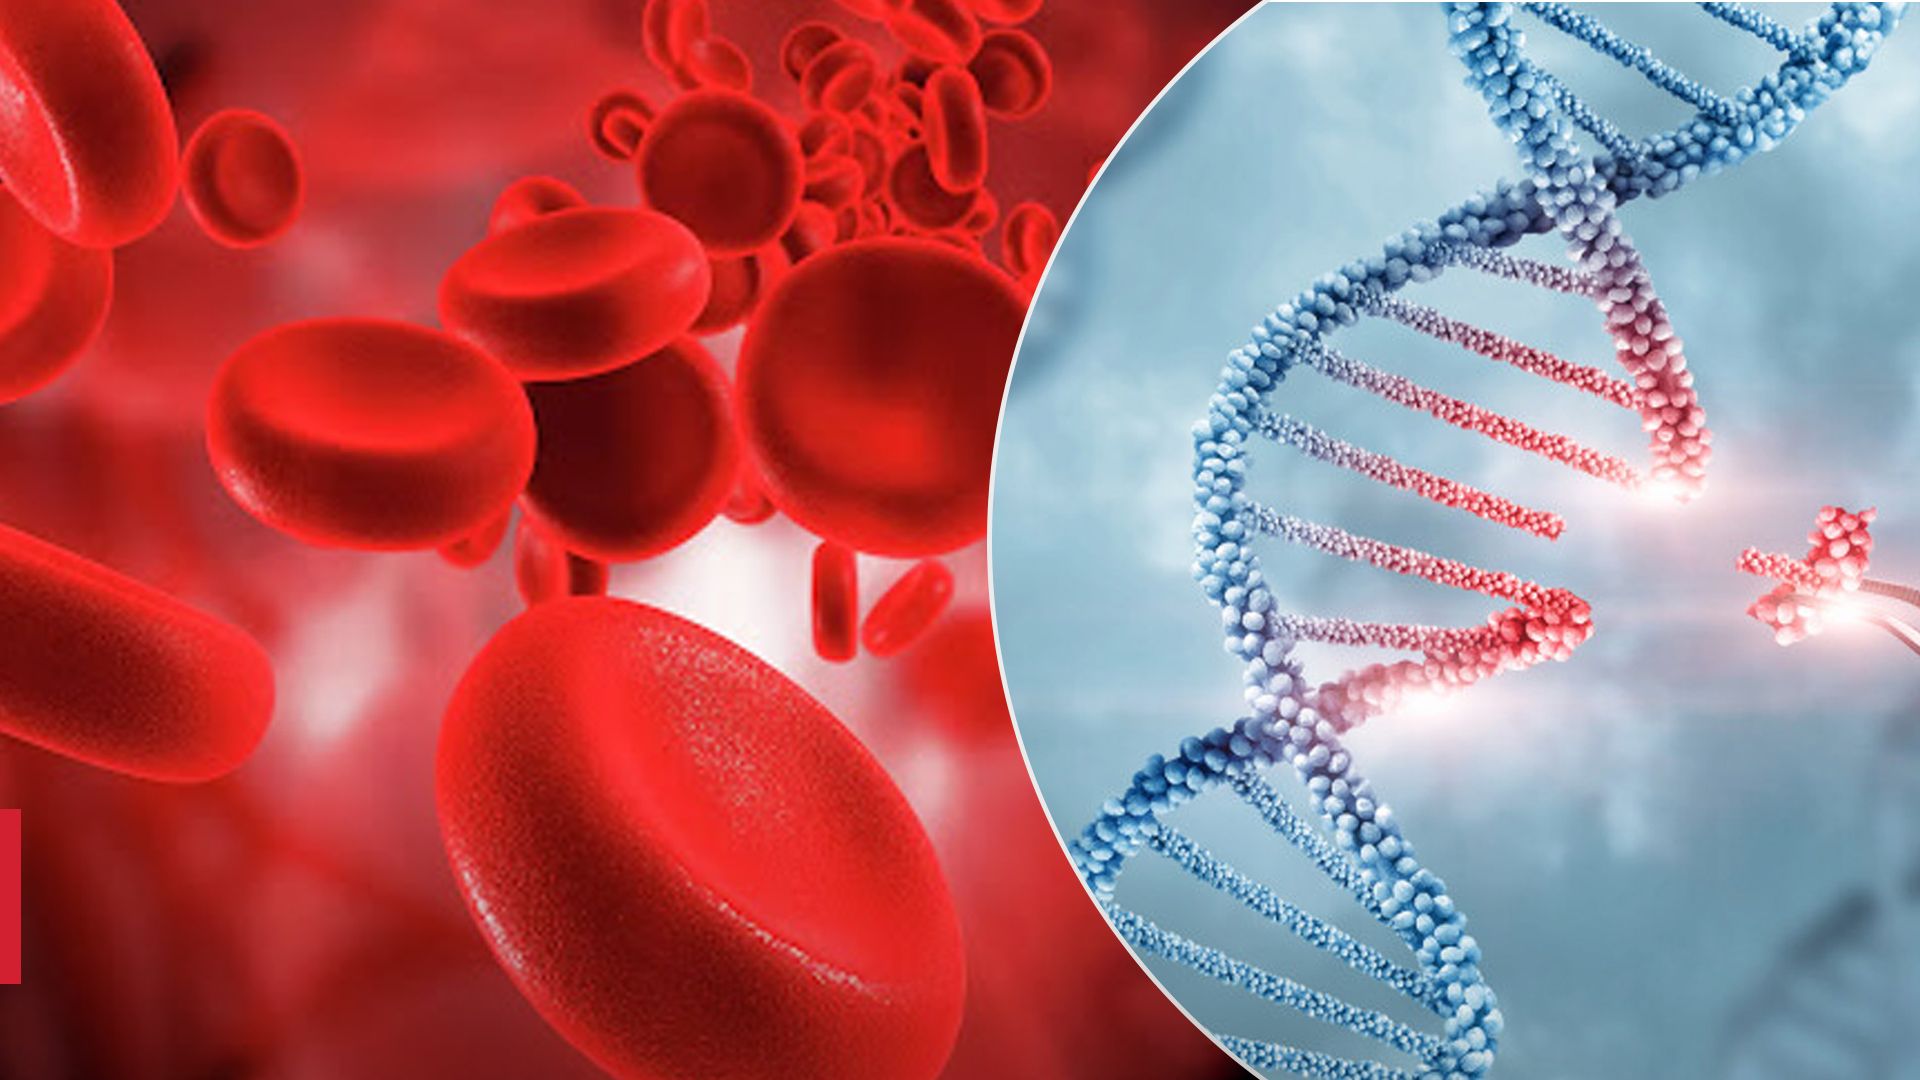 Метод "генетических ножниц": одобрили терапию для лечения редкой болезни крови - Здоровье 24